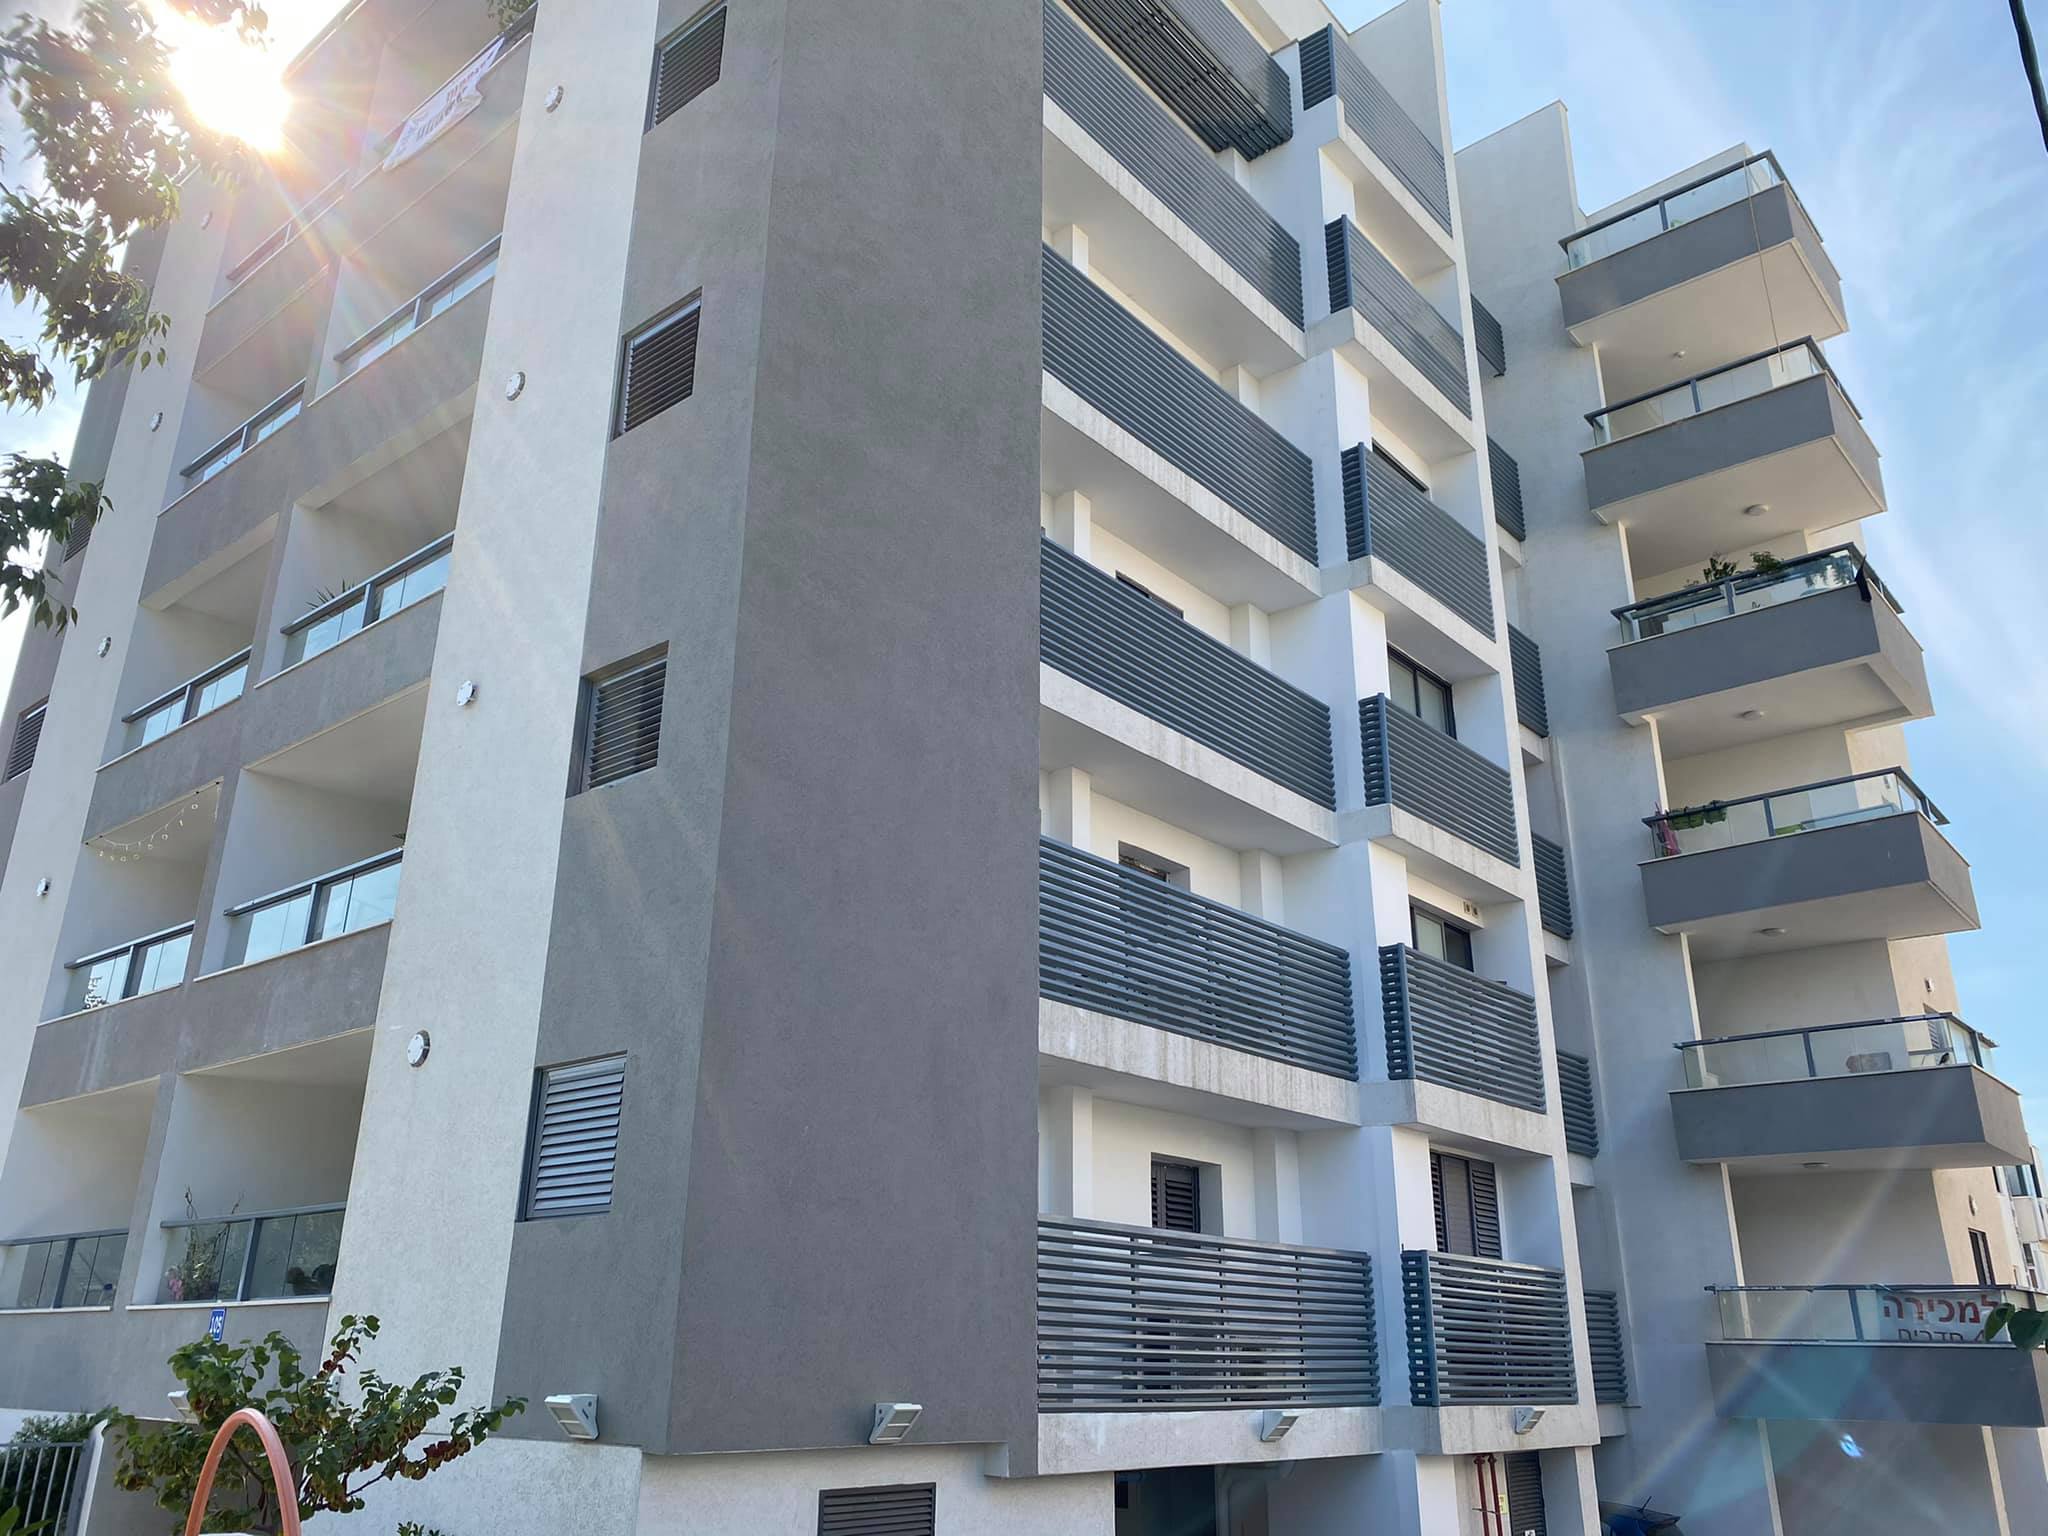 דירות להשכרה ברחוב משה דיין 105 - יד אליהו, תל אביב